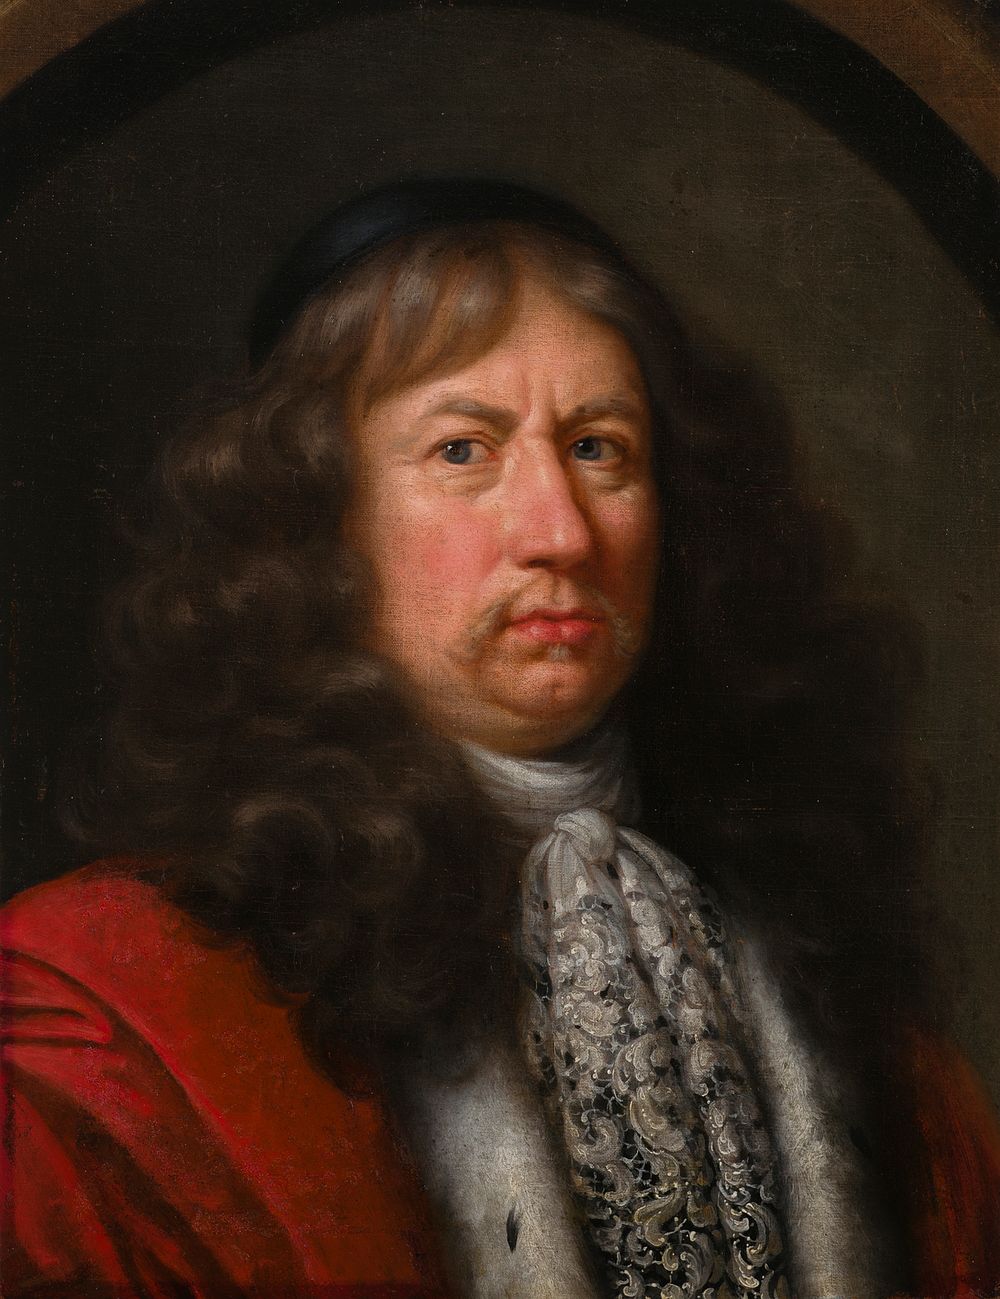 Portrait of count bengt oxenstjerna, 1650 - 1699